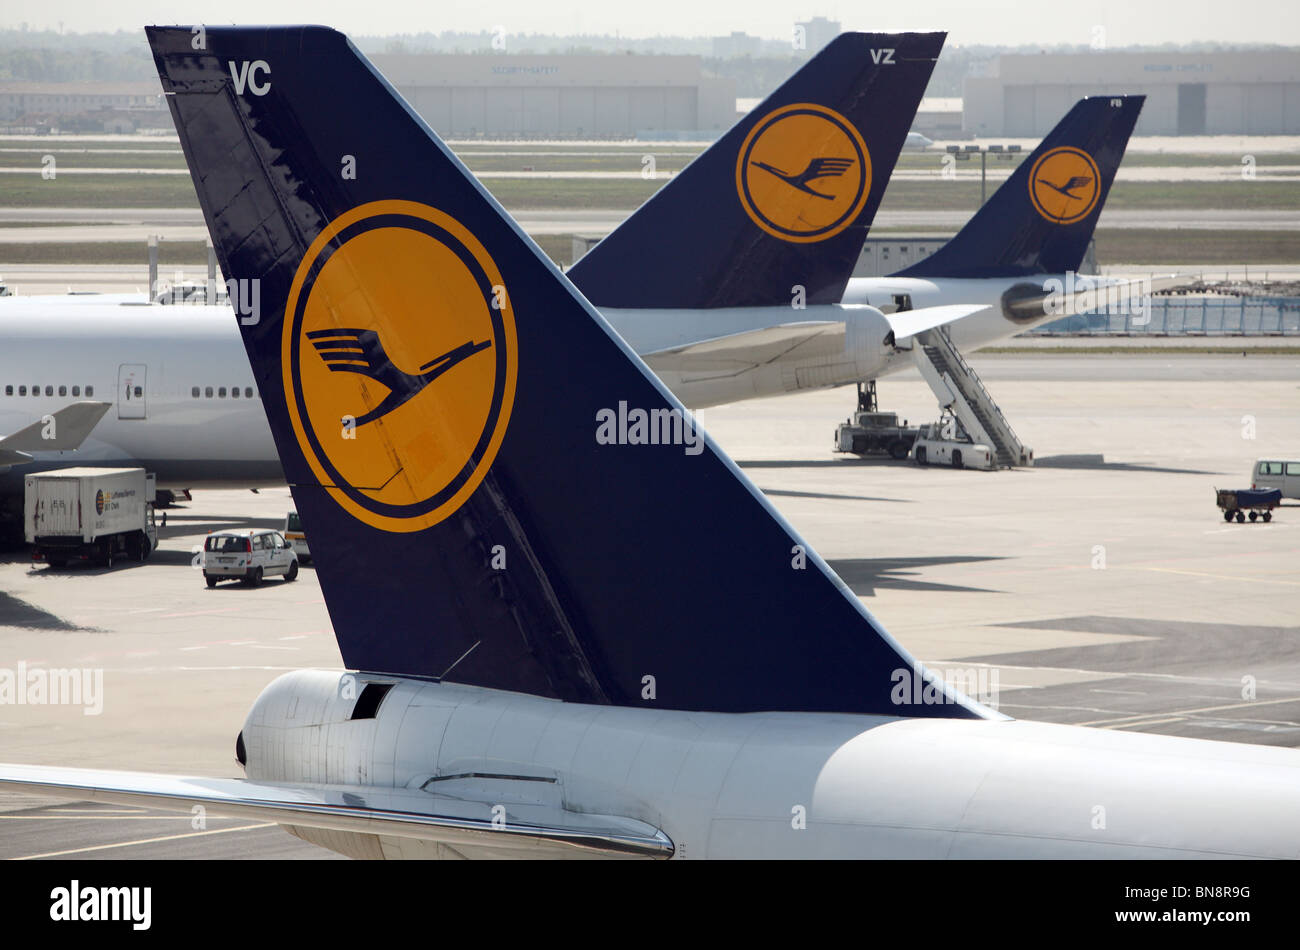 Les avions de la Lufthansa à l'aéroport, Frankfurt am Main, Allemagne Banque D'Images